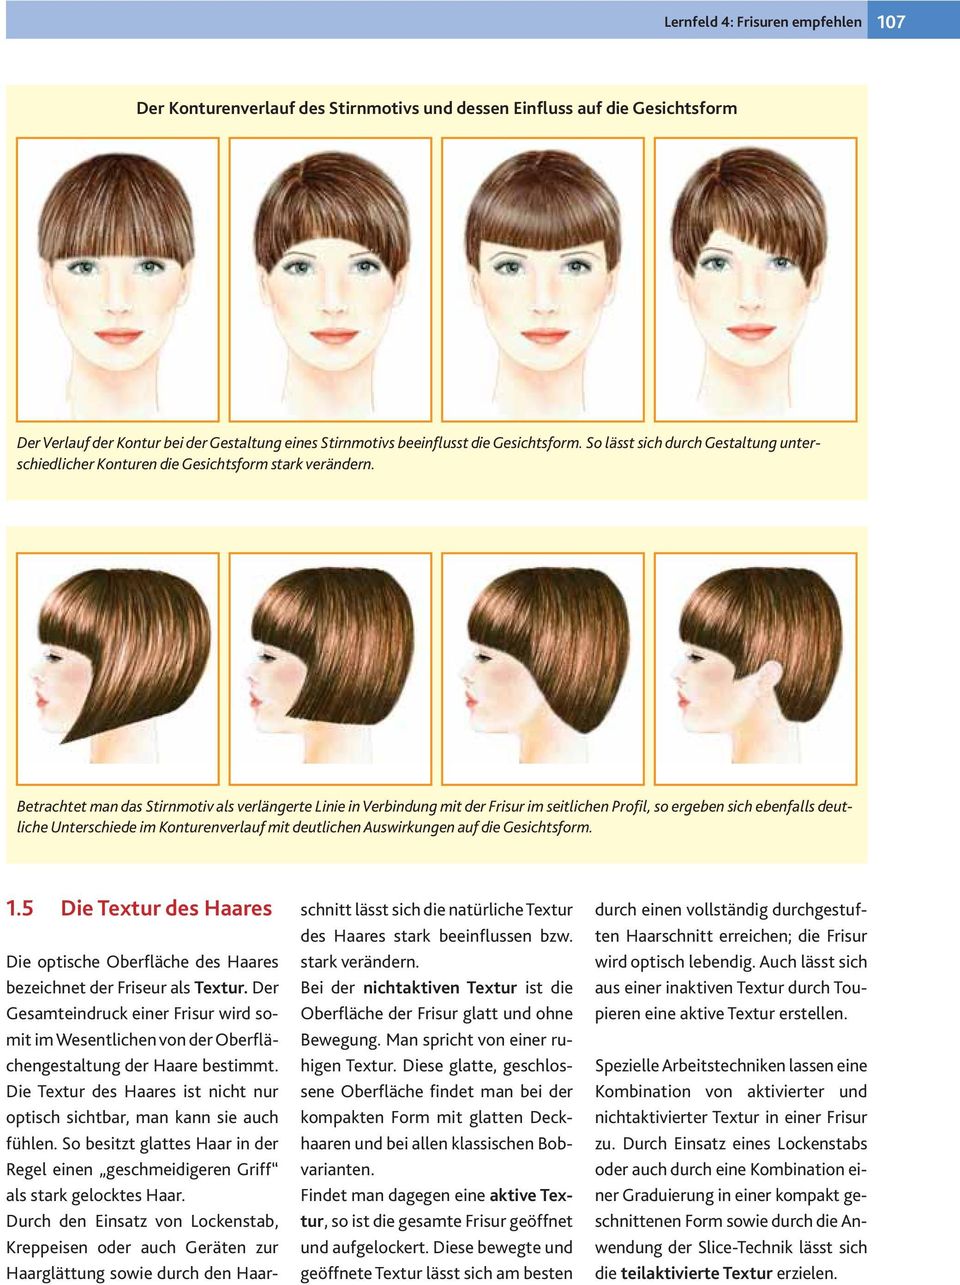 Betrachtet man das Stirnmotiv als verlängerte Linie in Verbindung mit der Frisur im seitlichen Profil, so ergeben sich ebenfalls deutliche Unterschiede im Konturenverlauf mit deutlichen Auswirkungen